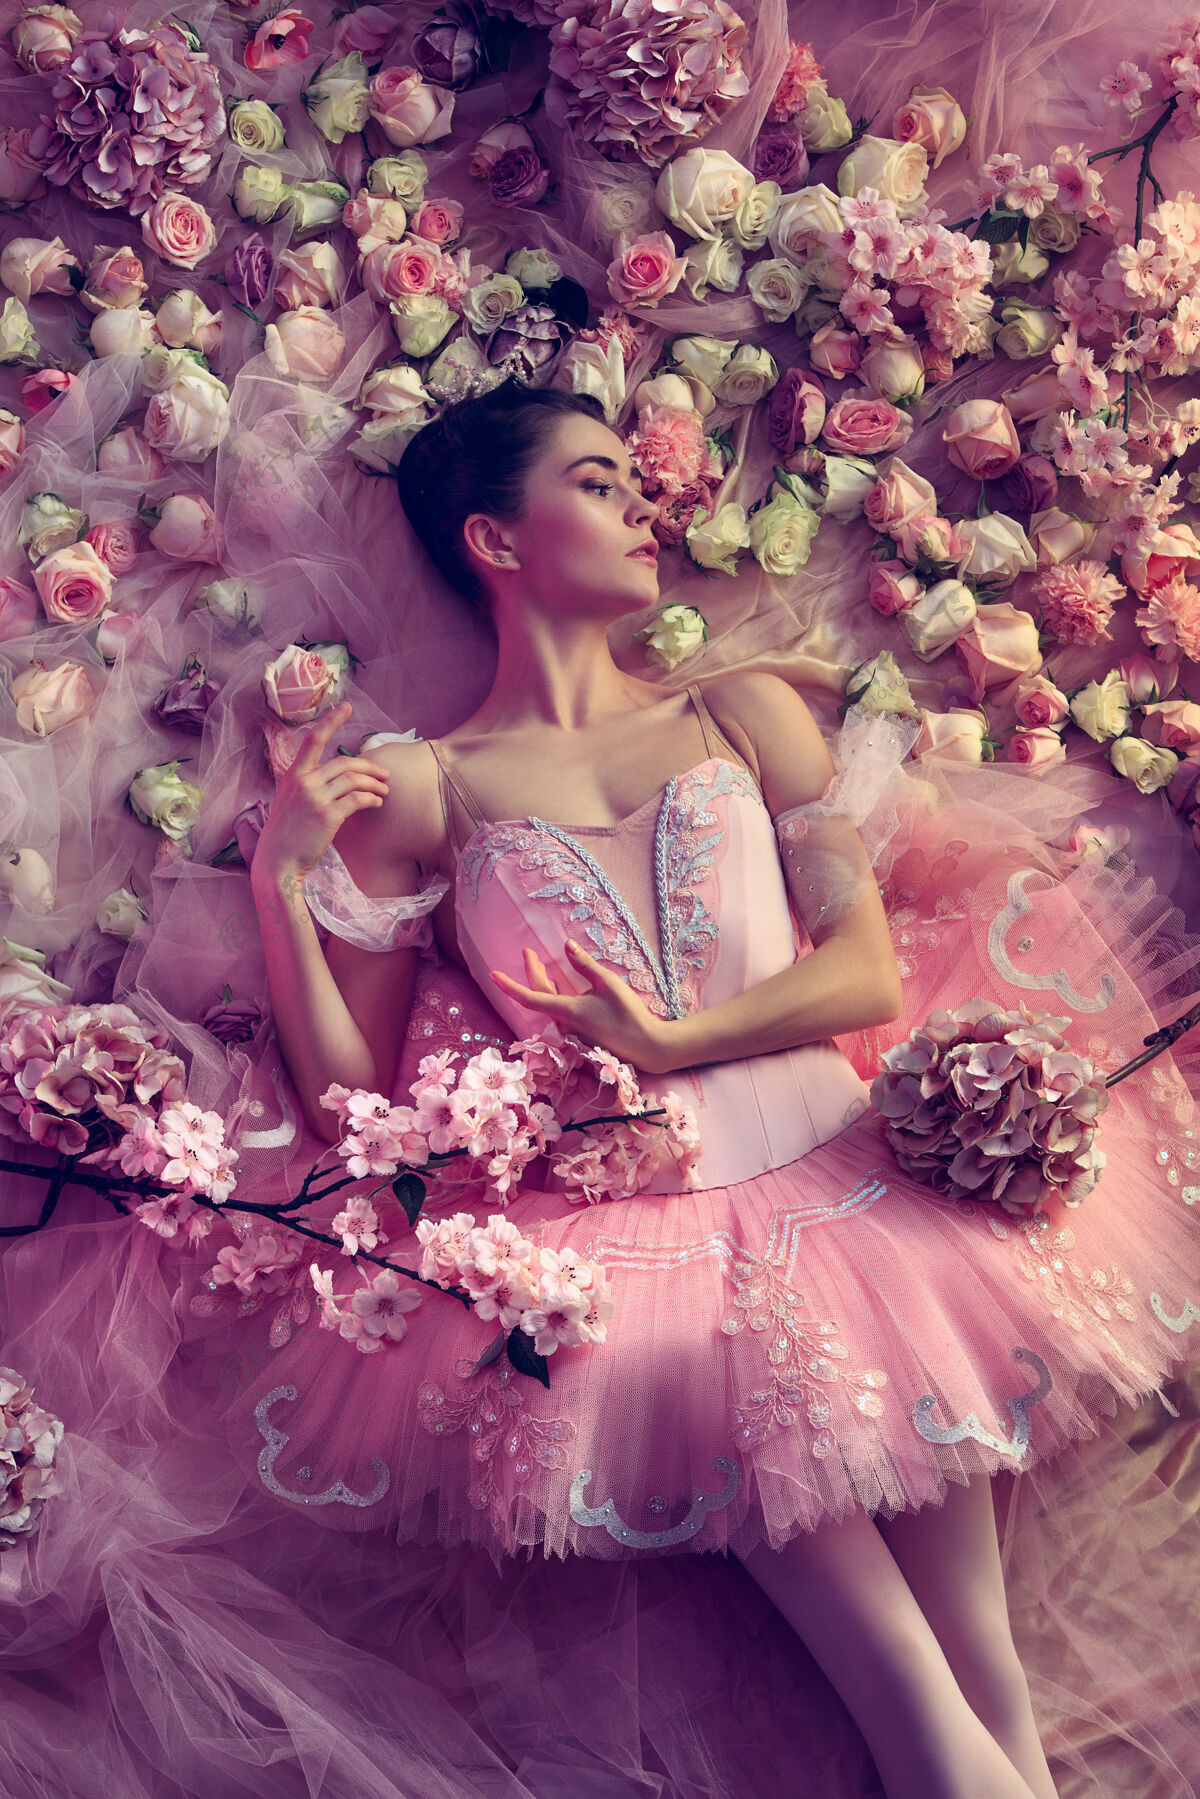 芭蕾舞绽放的灵魂美丽的年轻女子在粉色芭蕾舞团芭蕾舞团的俯视图在珊瑚光下的春天的心情和温柔艺术照片春天的概念 开花和大自然的觉醒姿势活跃芭蕾舞演员